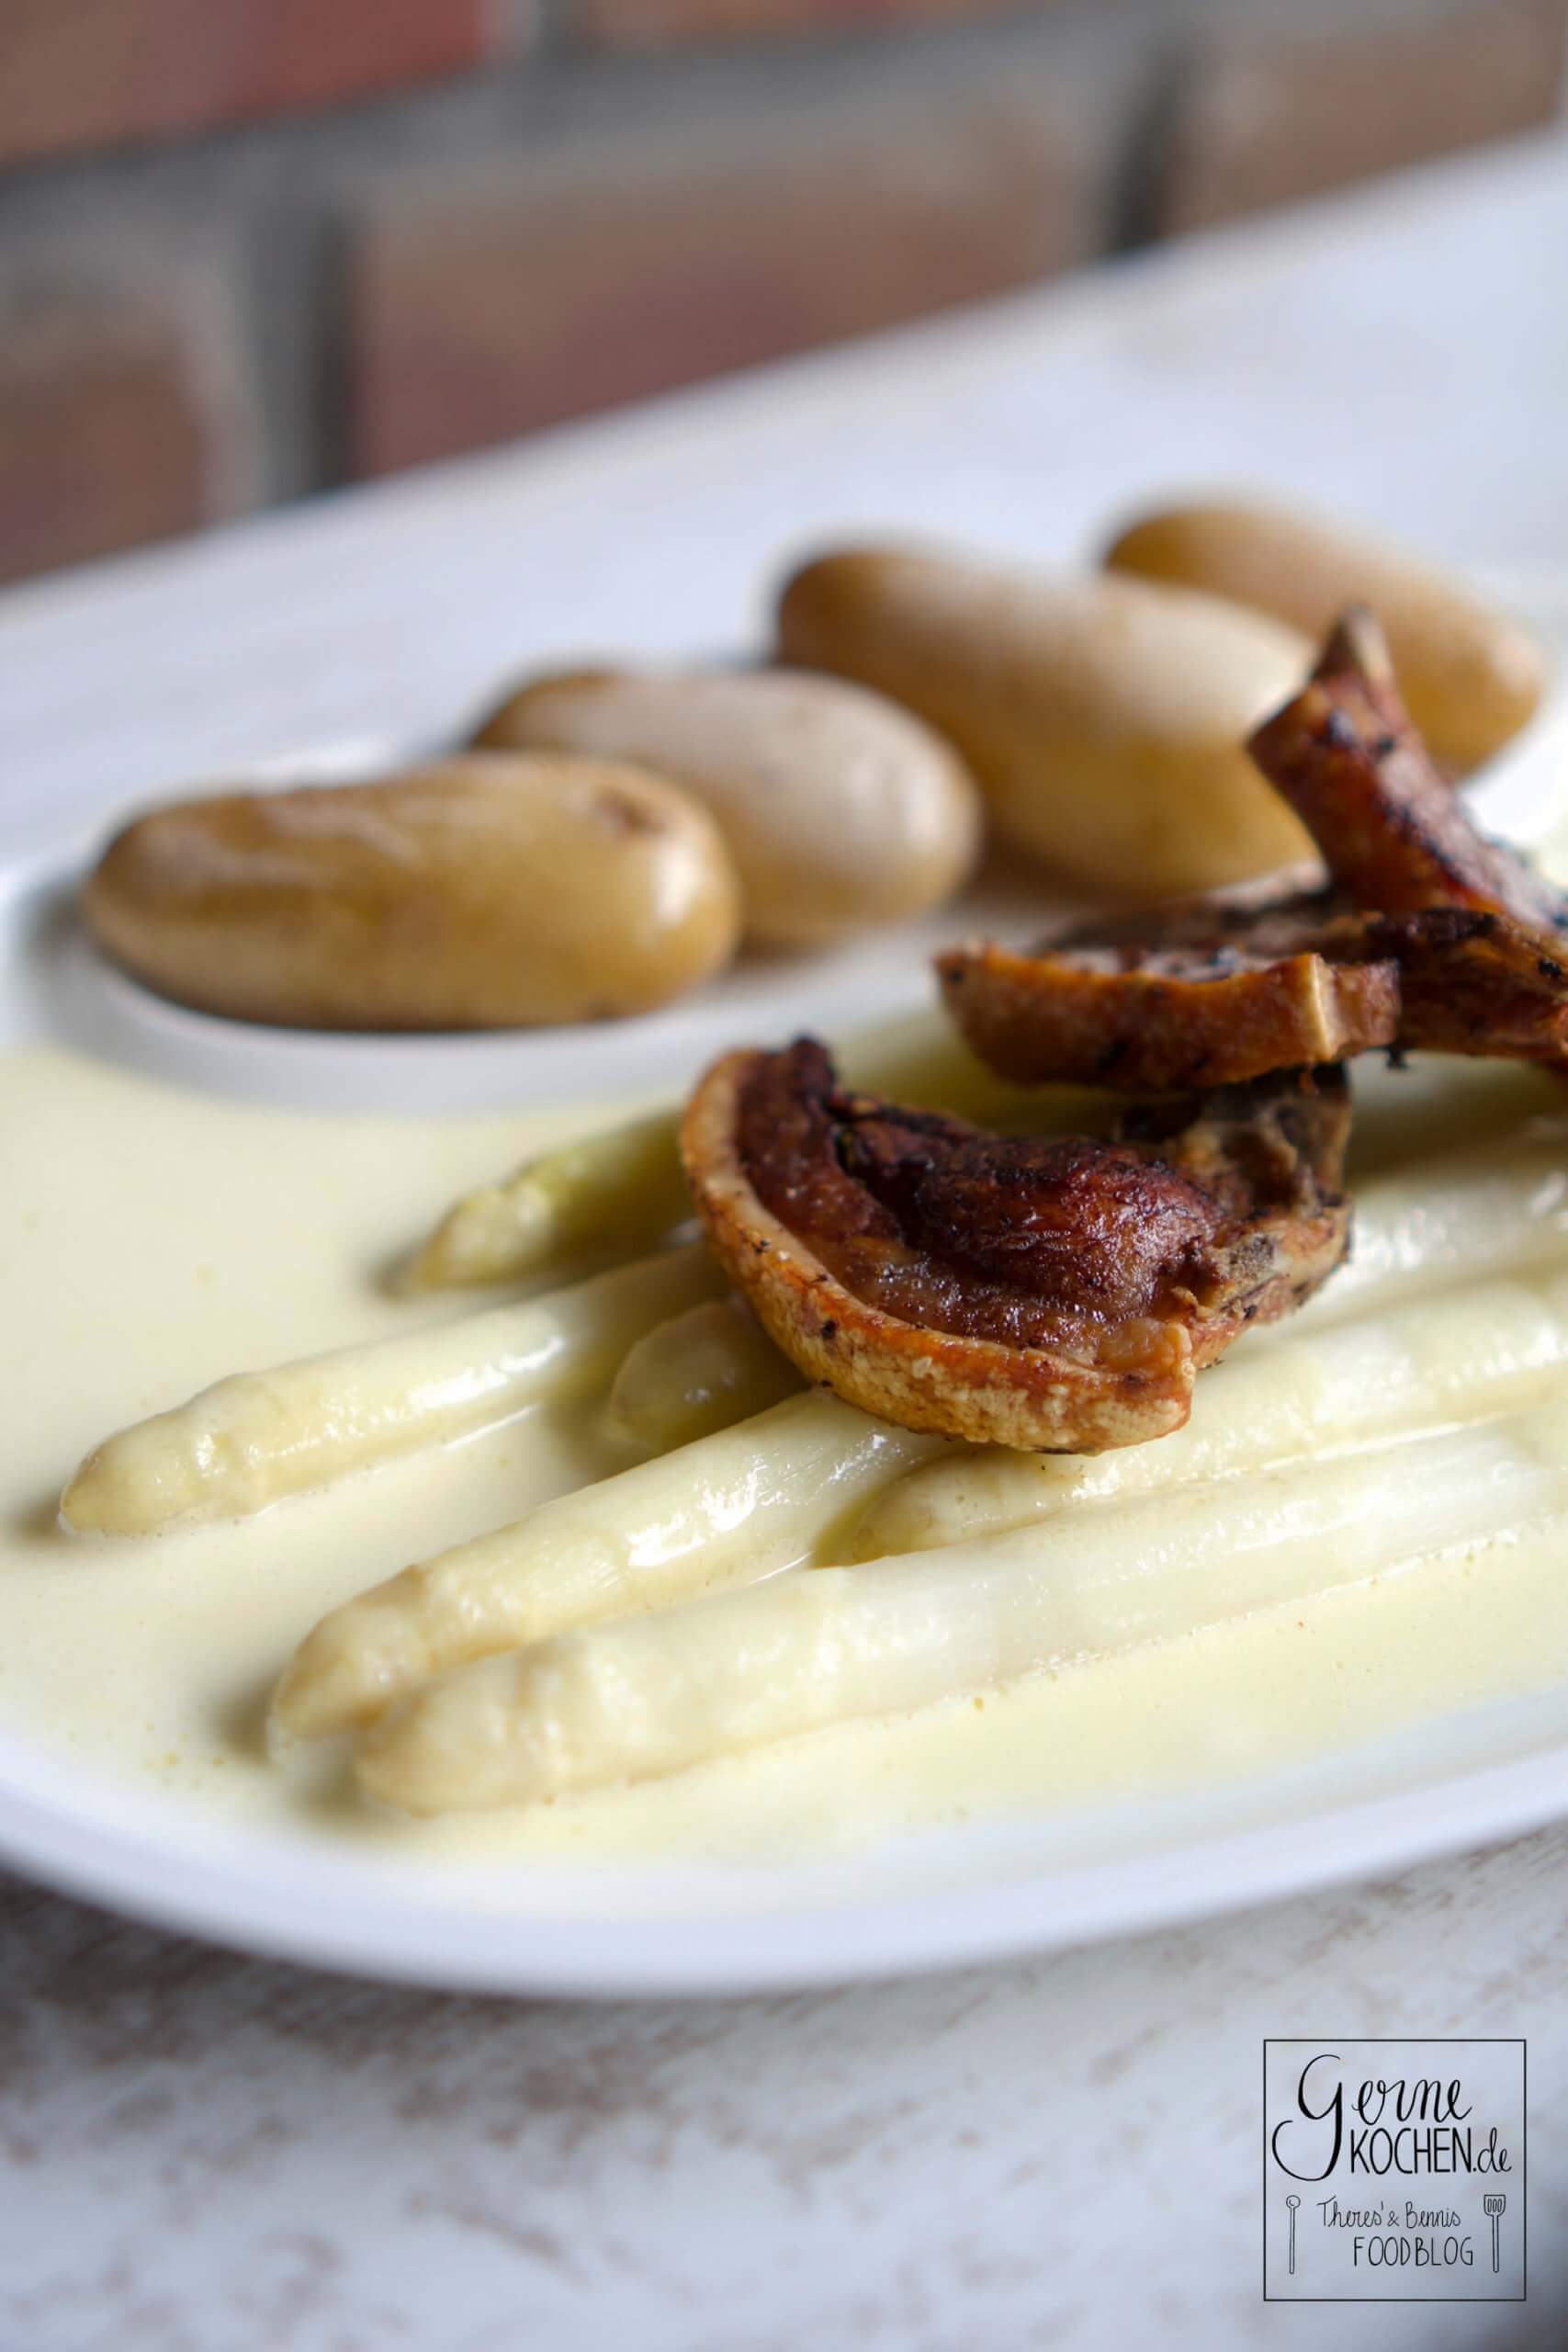 Spargel (sous vide) mit Frühkartoffeln und Spanferkelkoteletts